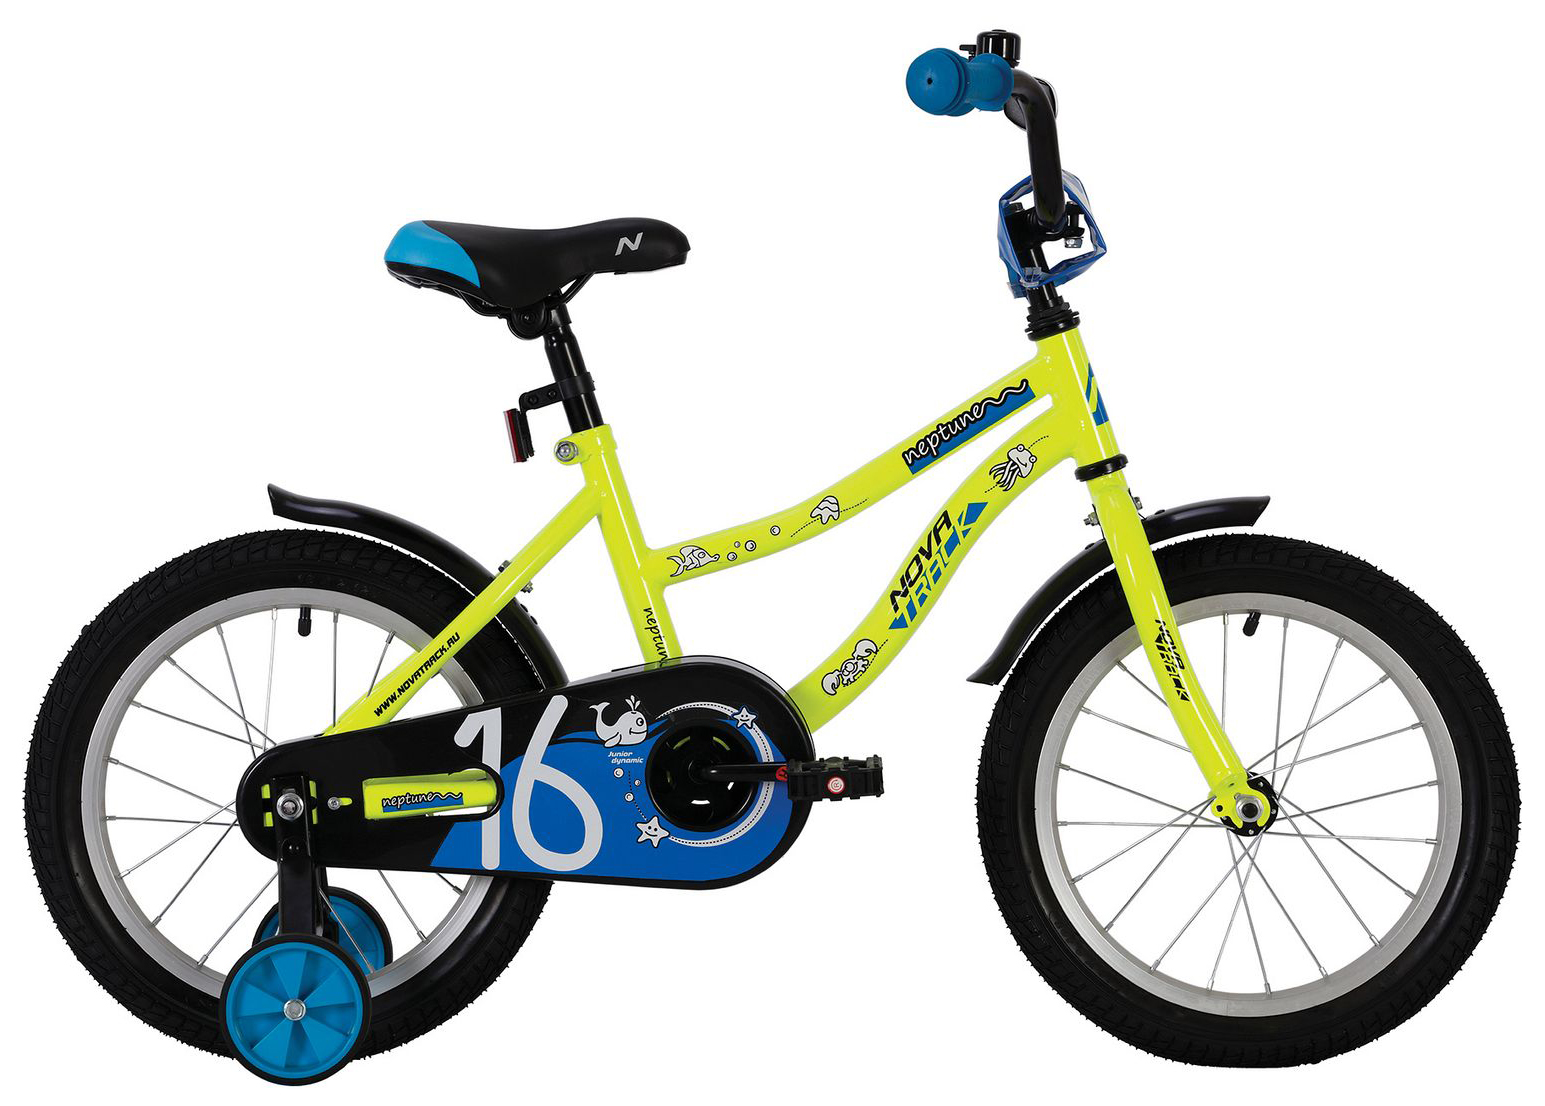  Отзывы о Детском велосипеде Novatrack Neptune 14 2020